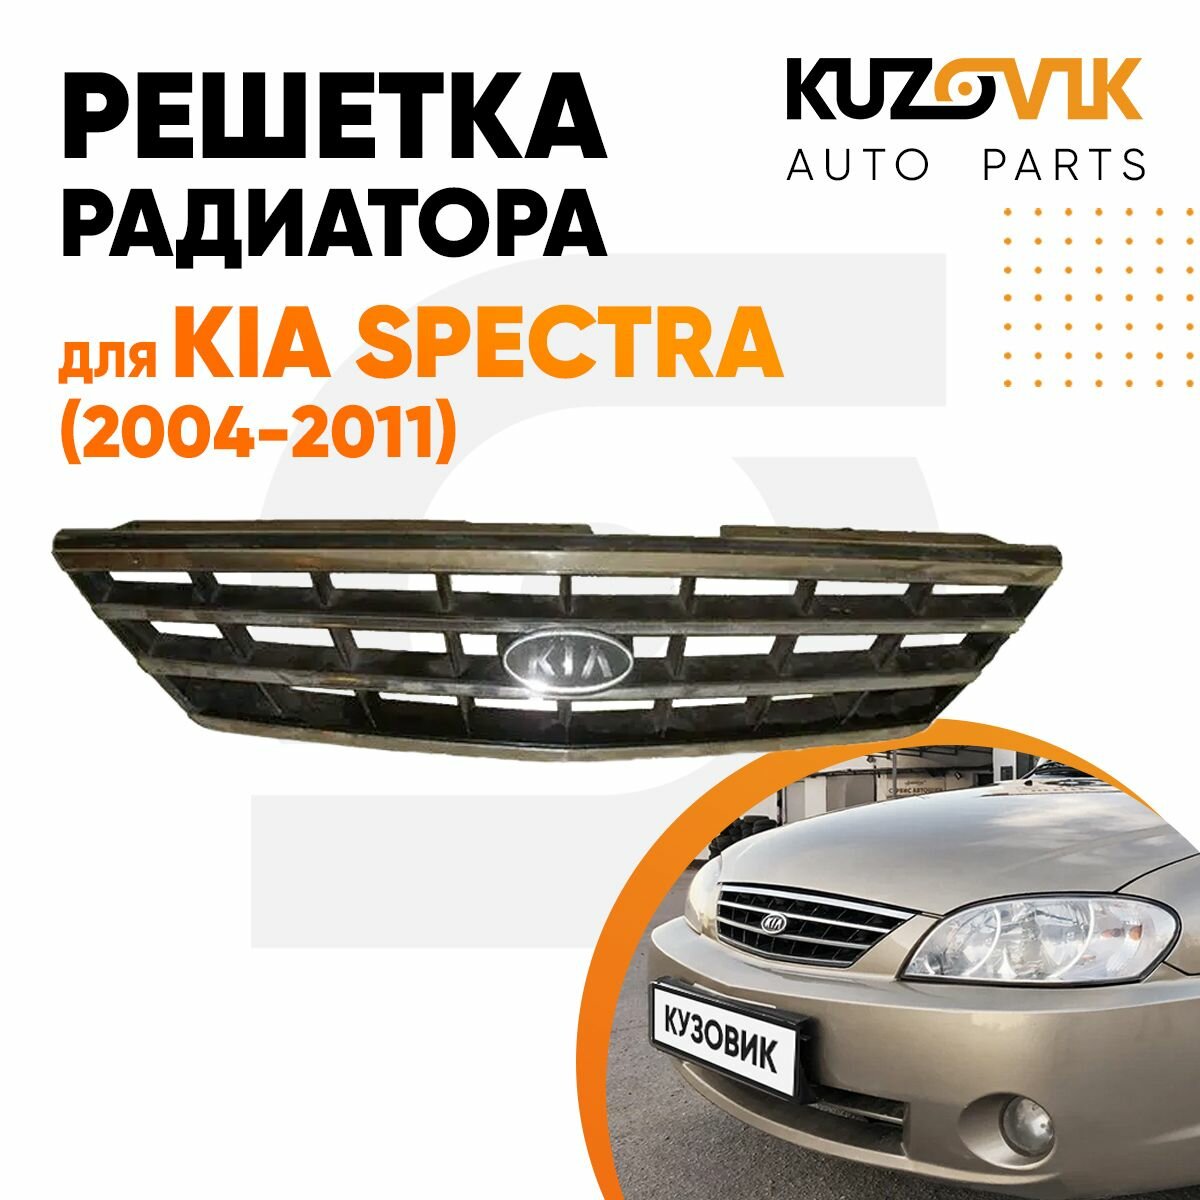 Решетка радиатора Kia Spectra (2004-2011)